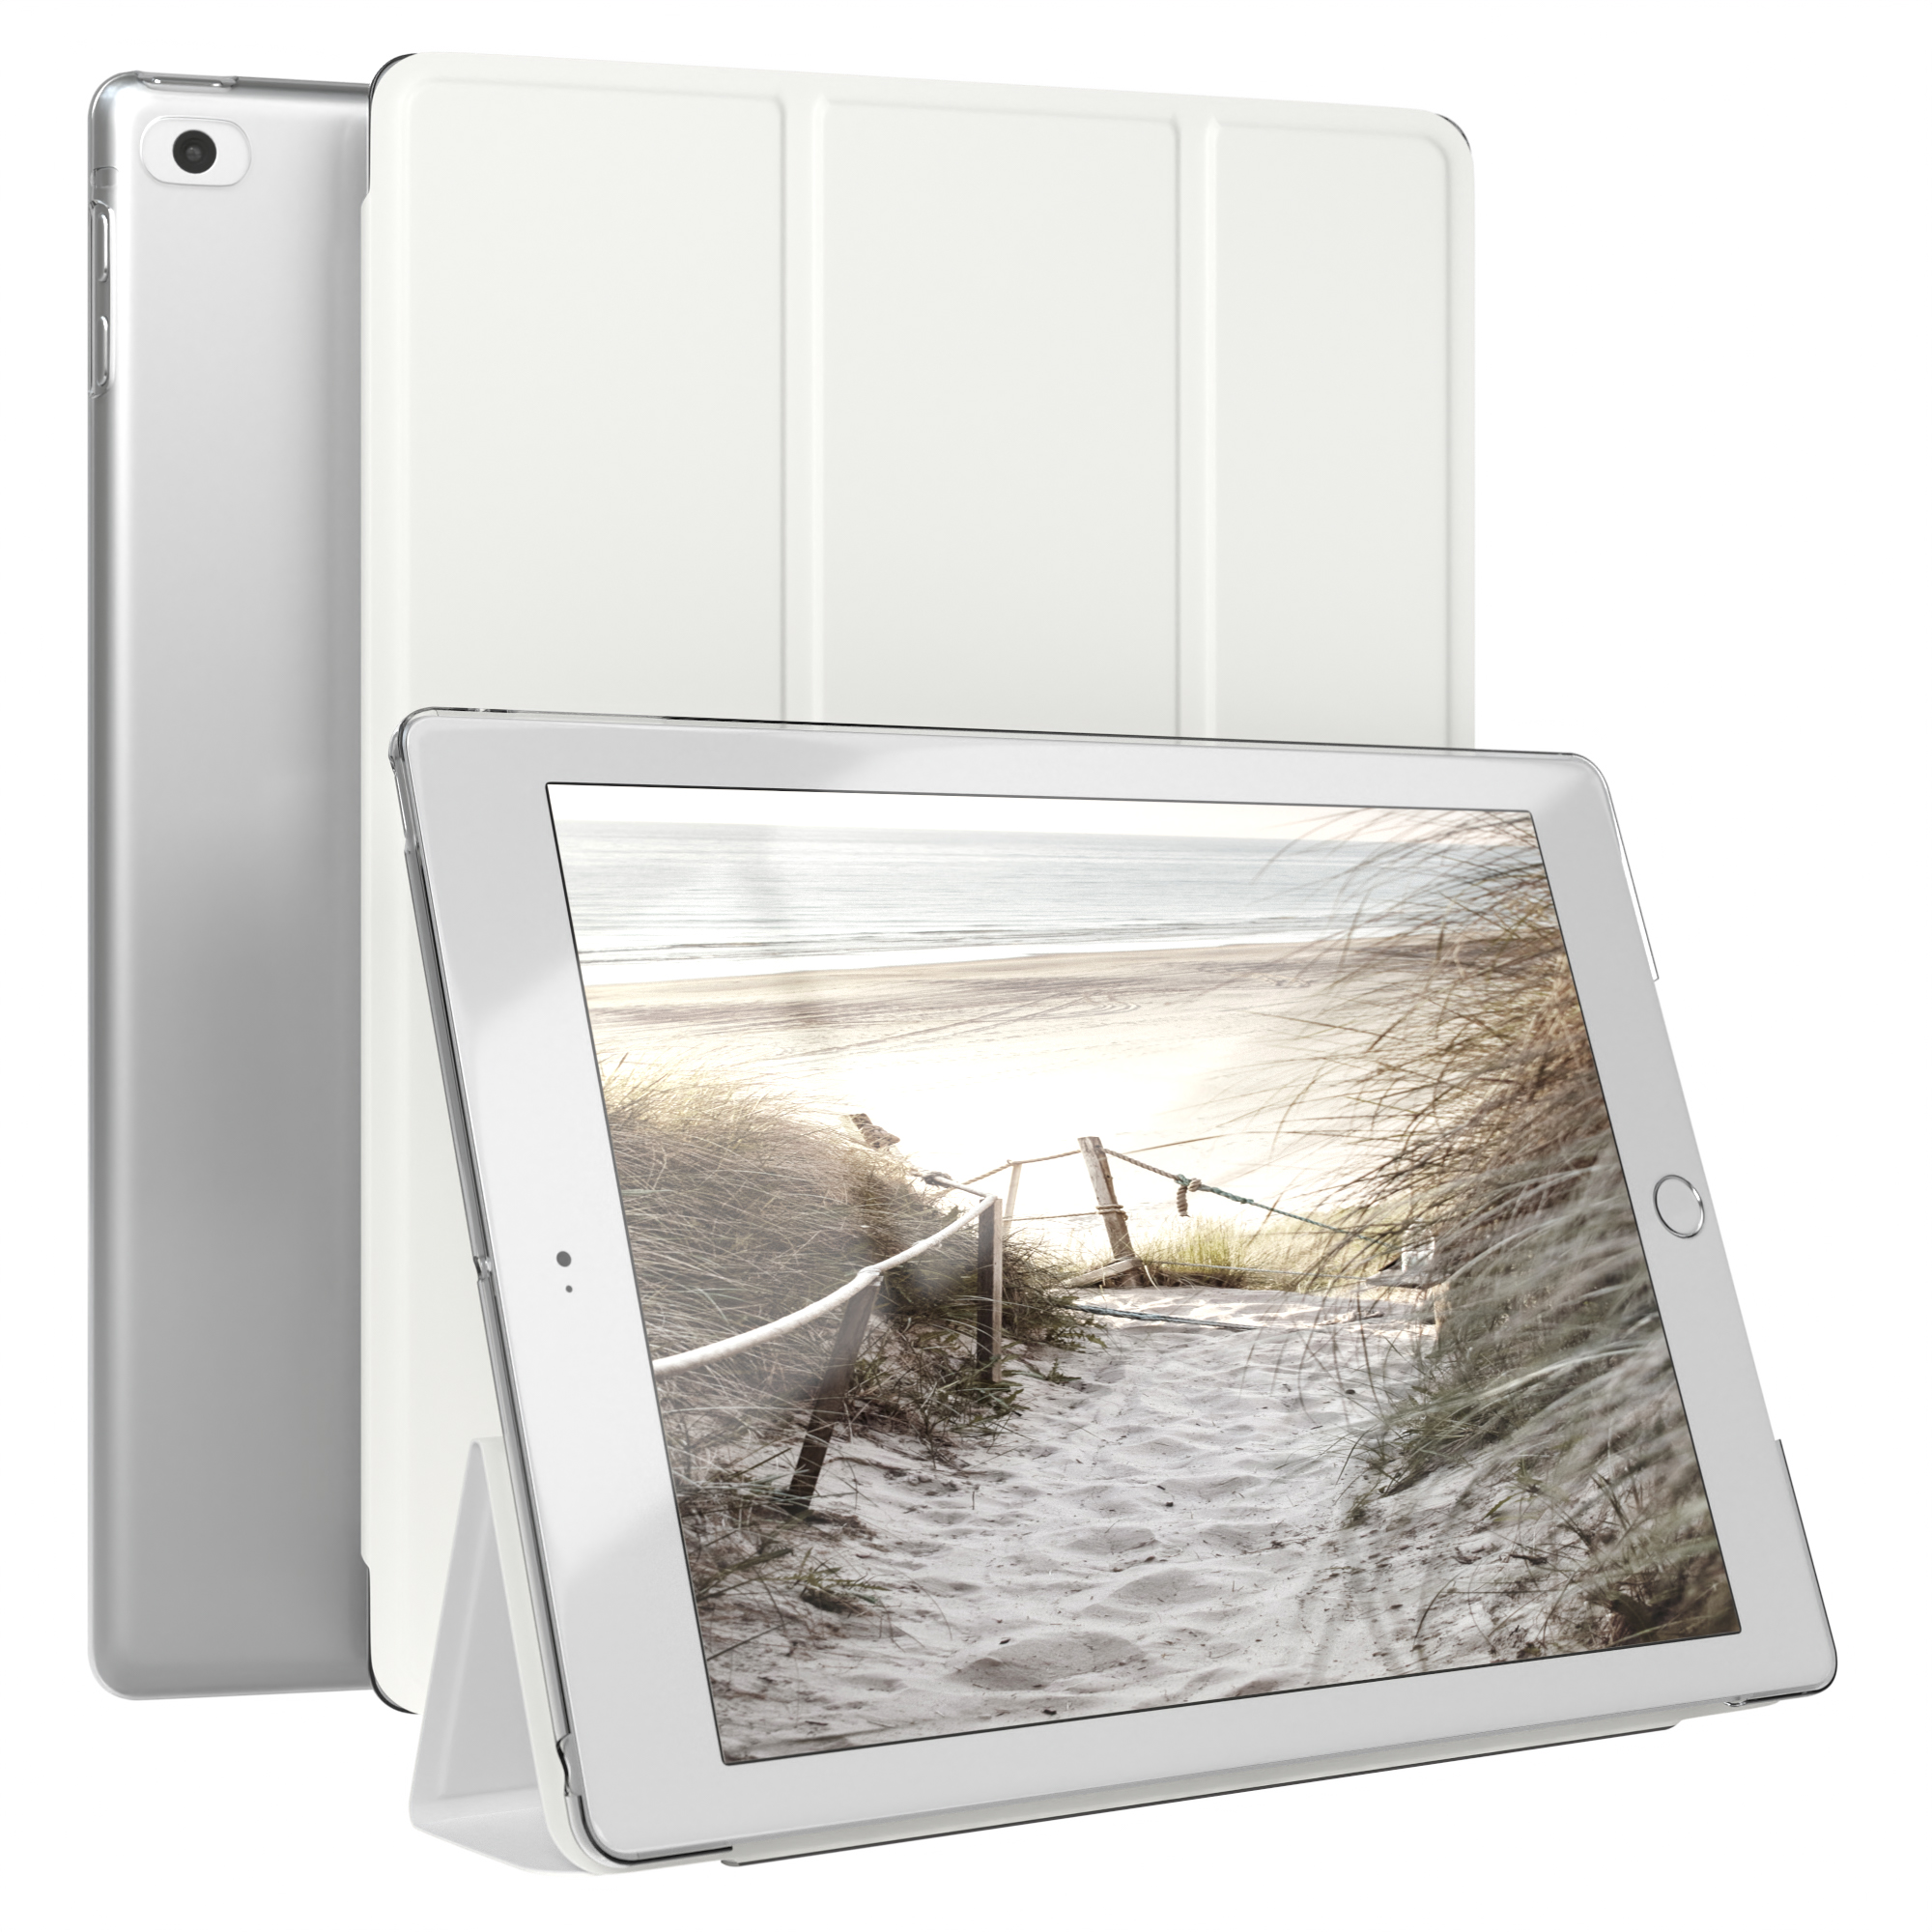 EAZY CASE Smart Case 5./6. für Weiß & Kunstleder, Bookcover Tablethülle Generation für iPad Air 1/Air 2 Apple